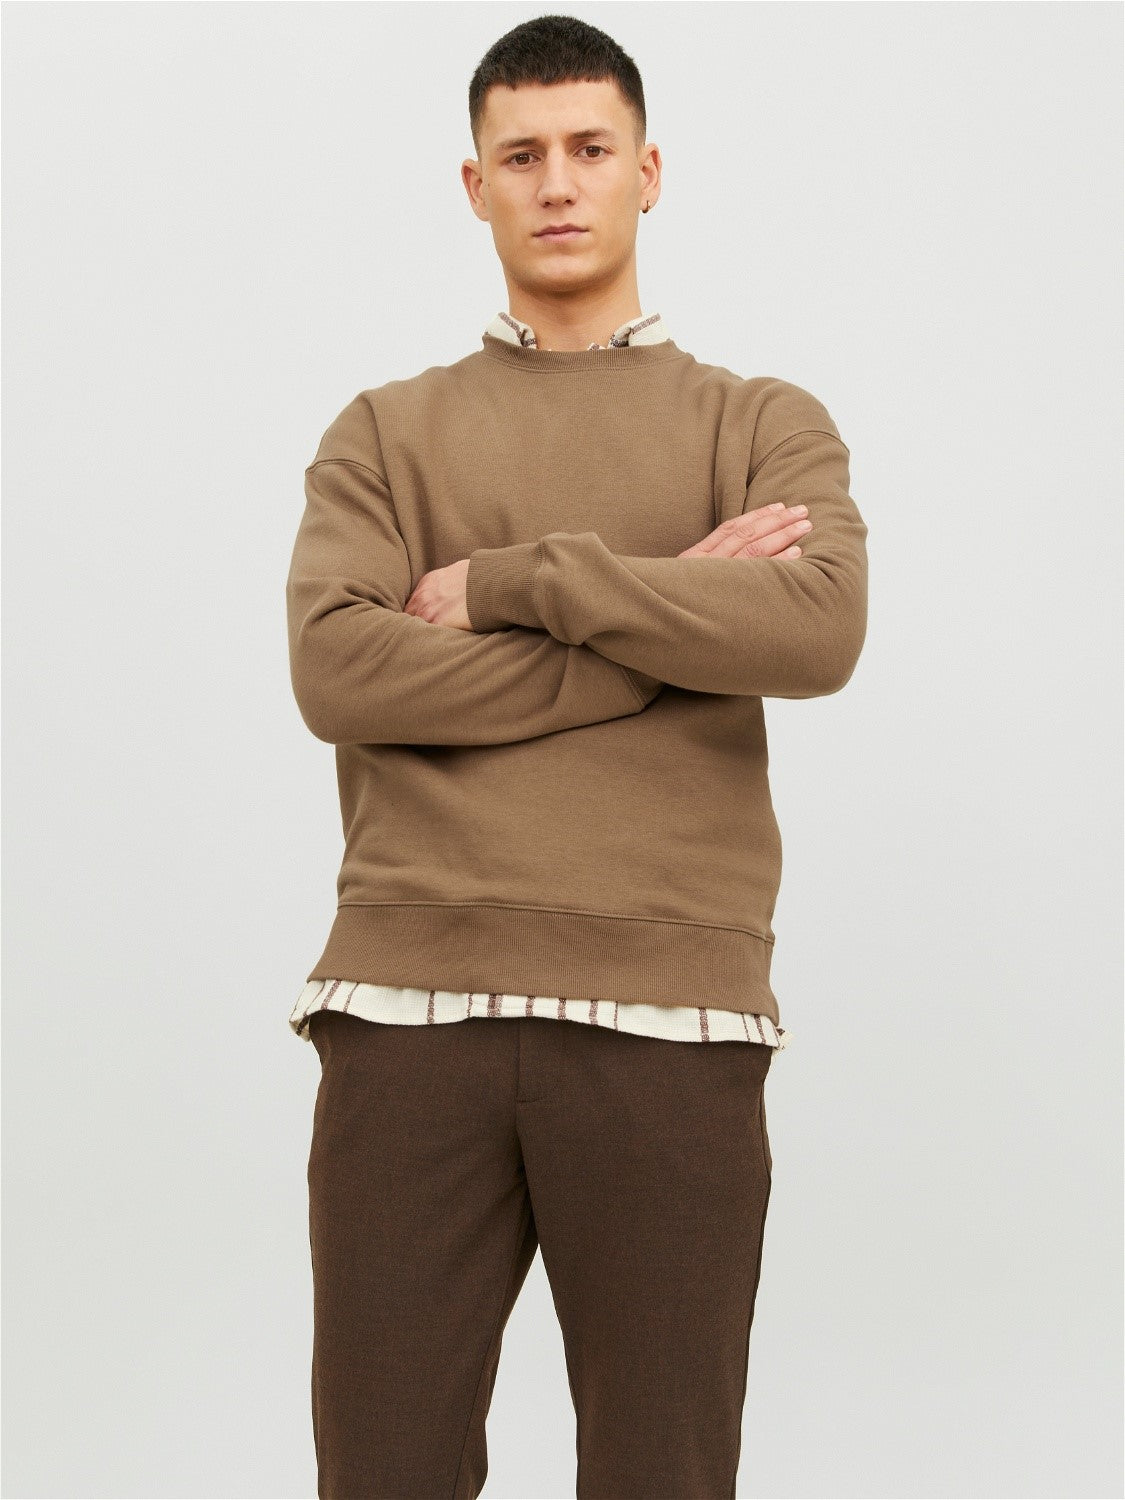 JJESTAR Sweater Light Brown